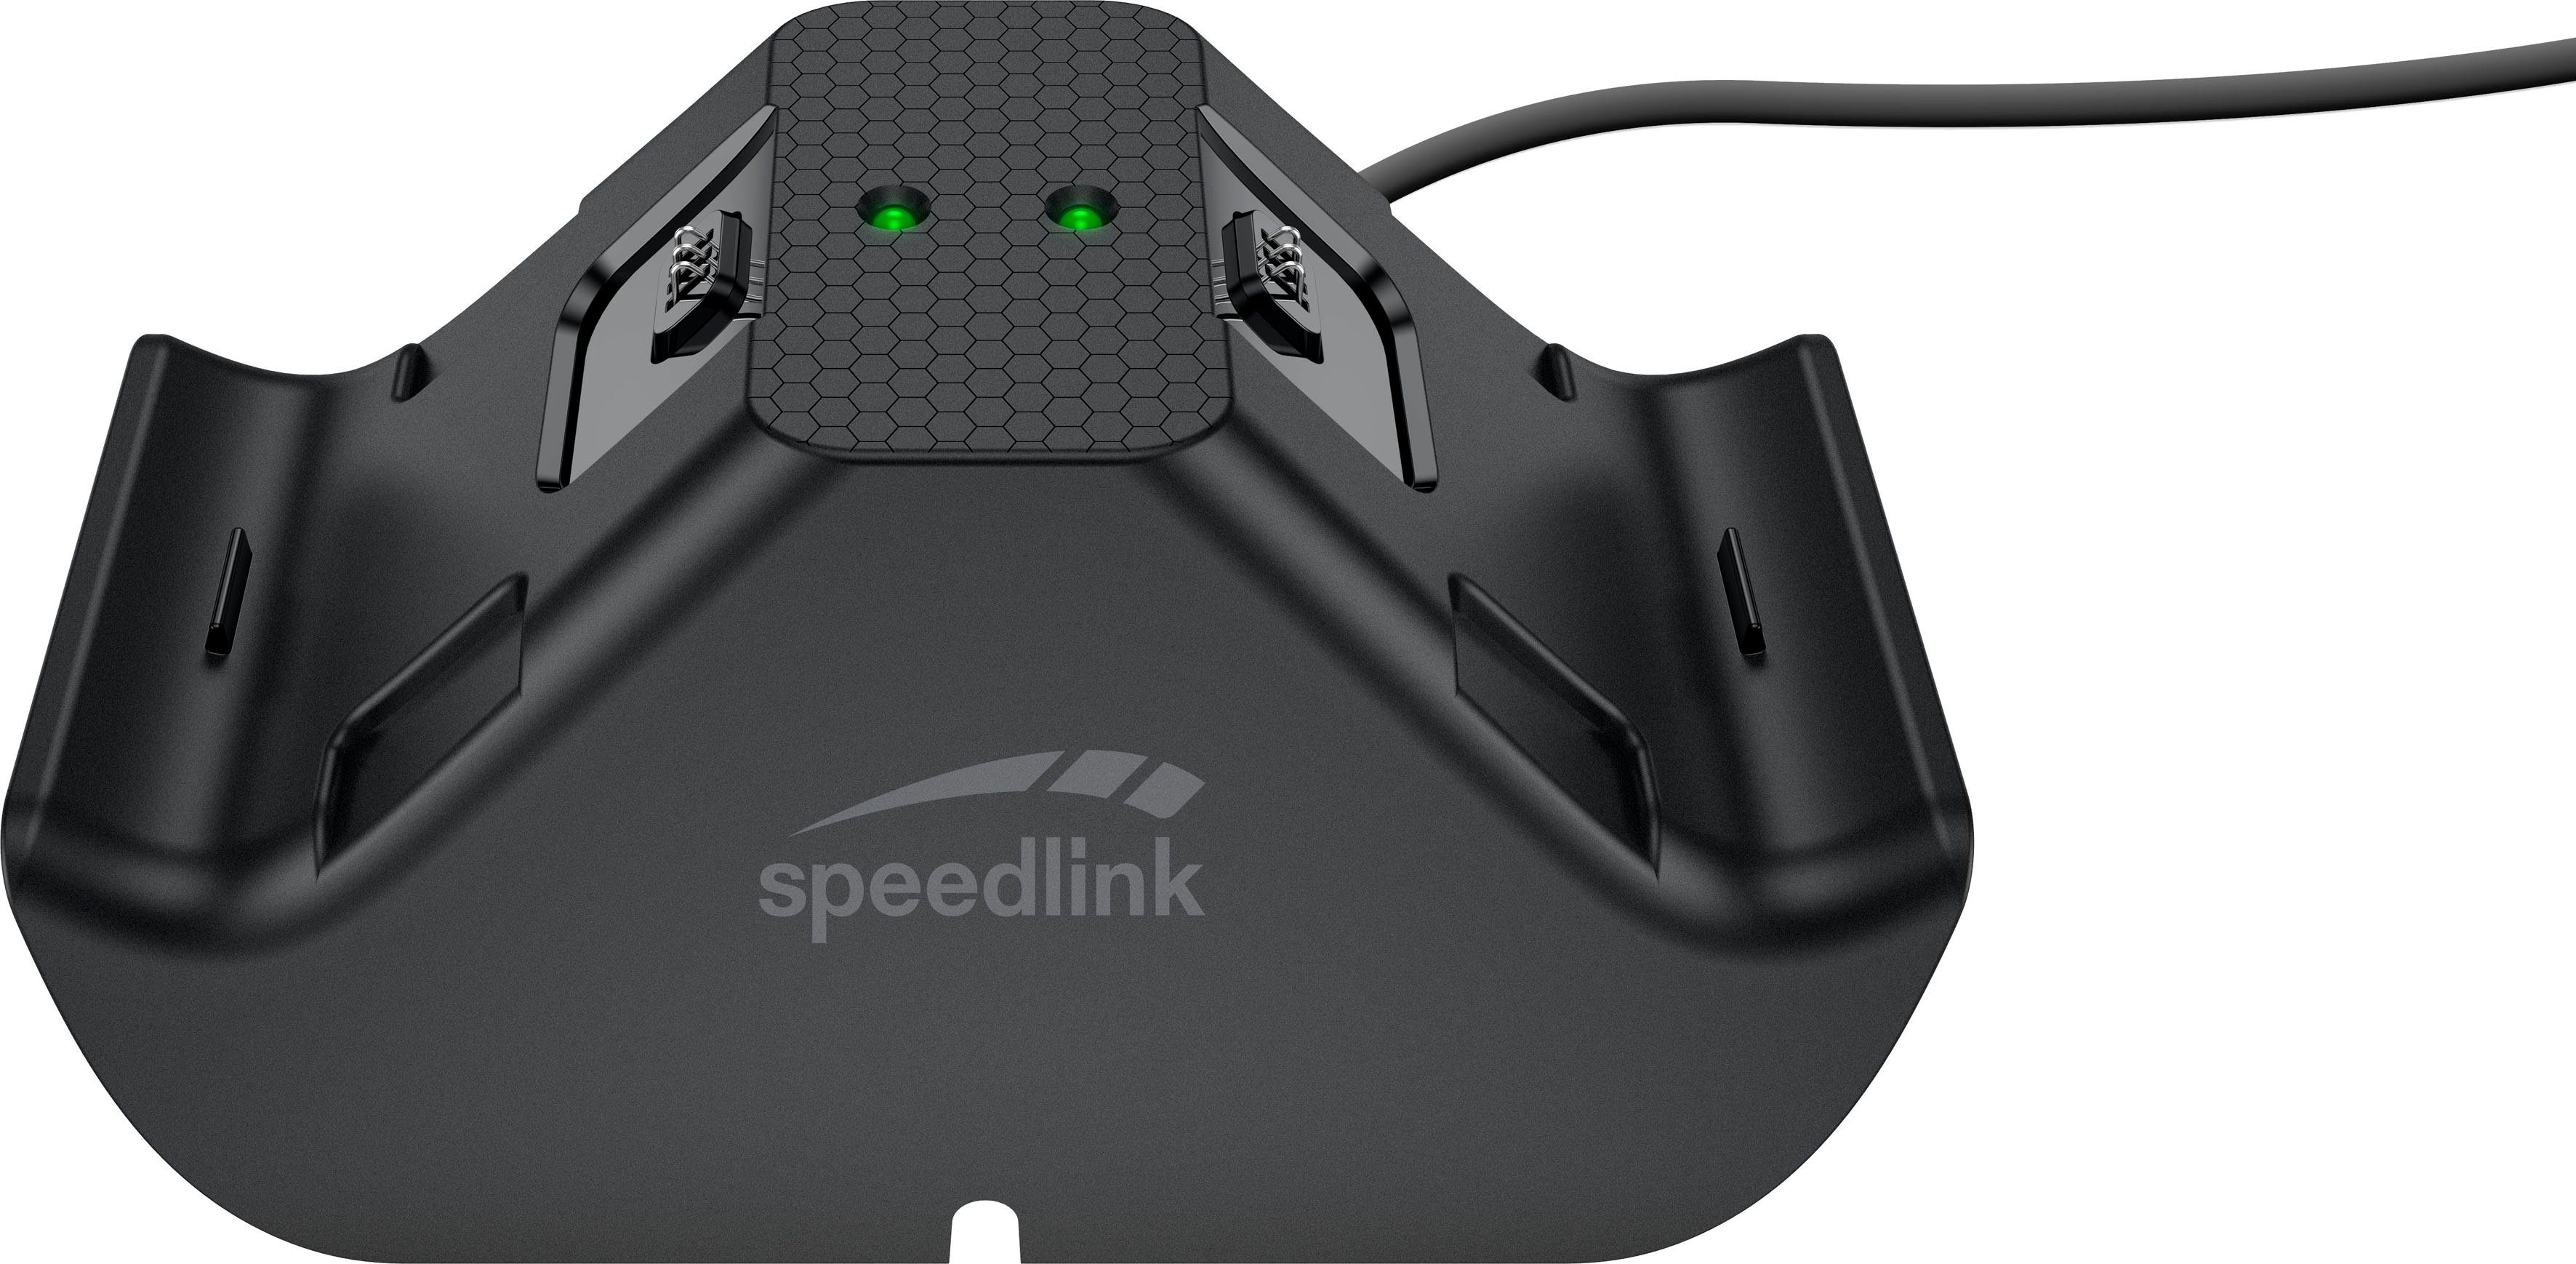 Speedlink Xbox JAZZ X/S) (für Series Controller-Ladestation